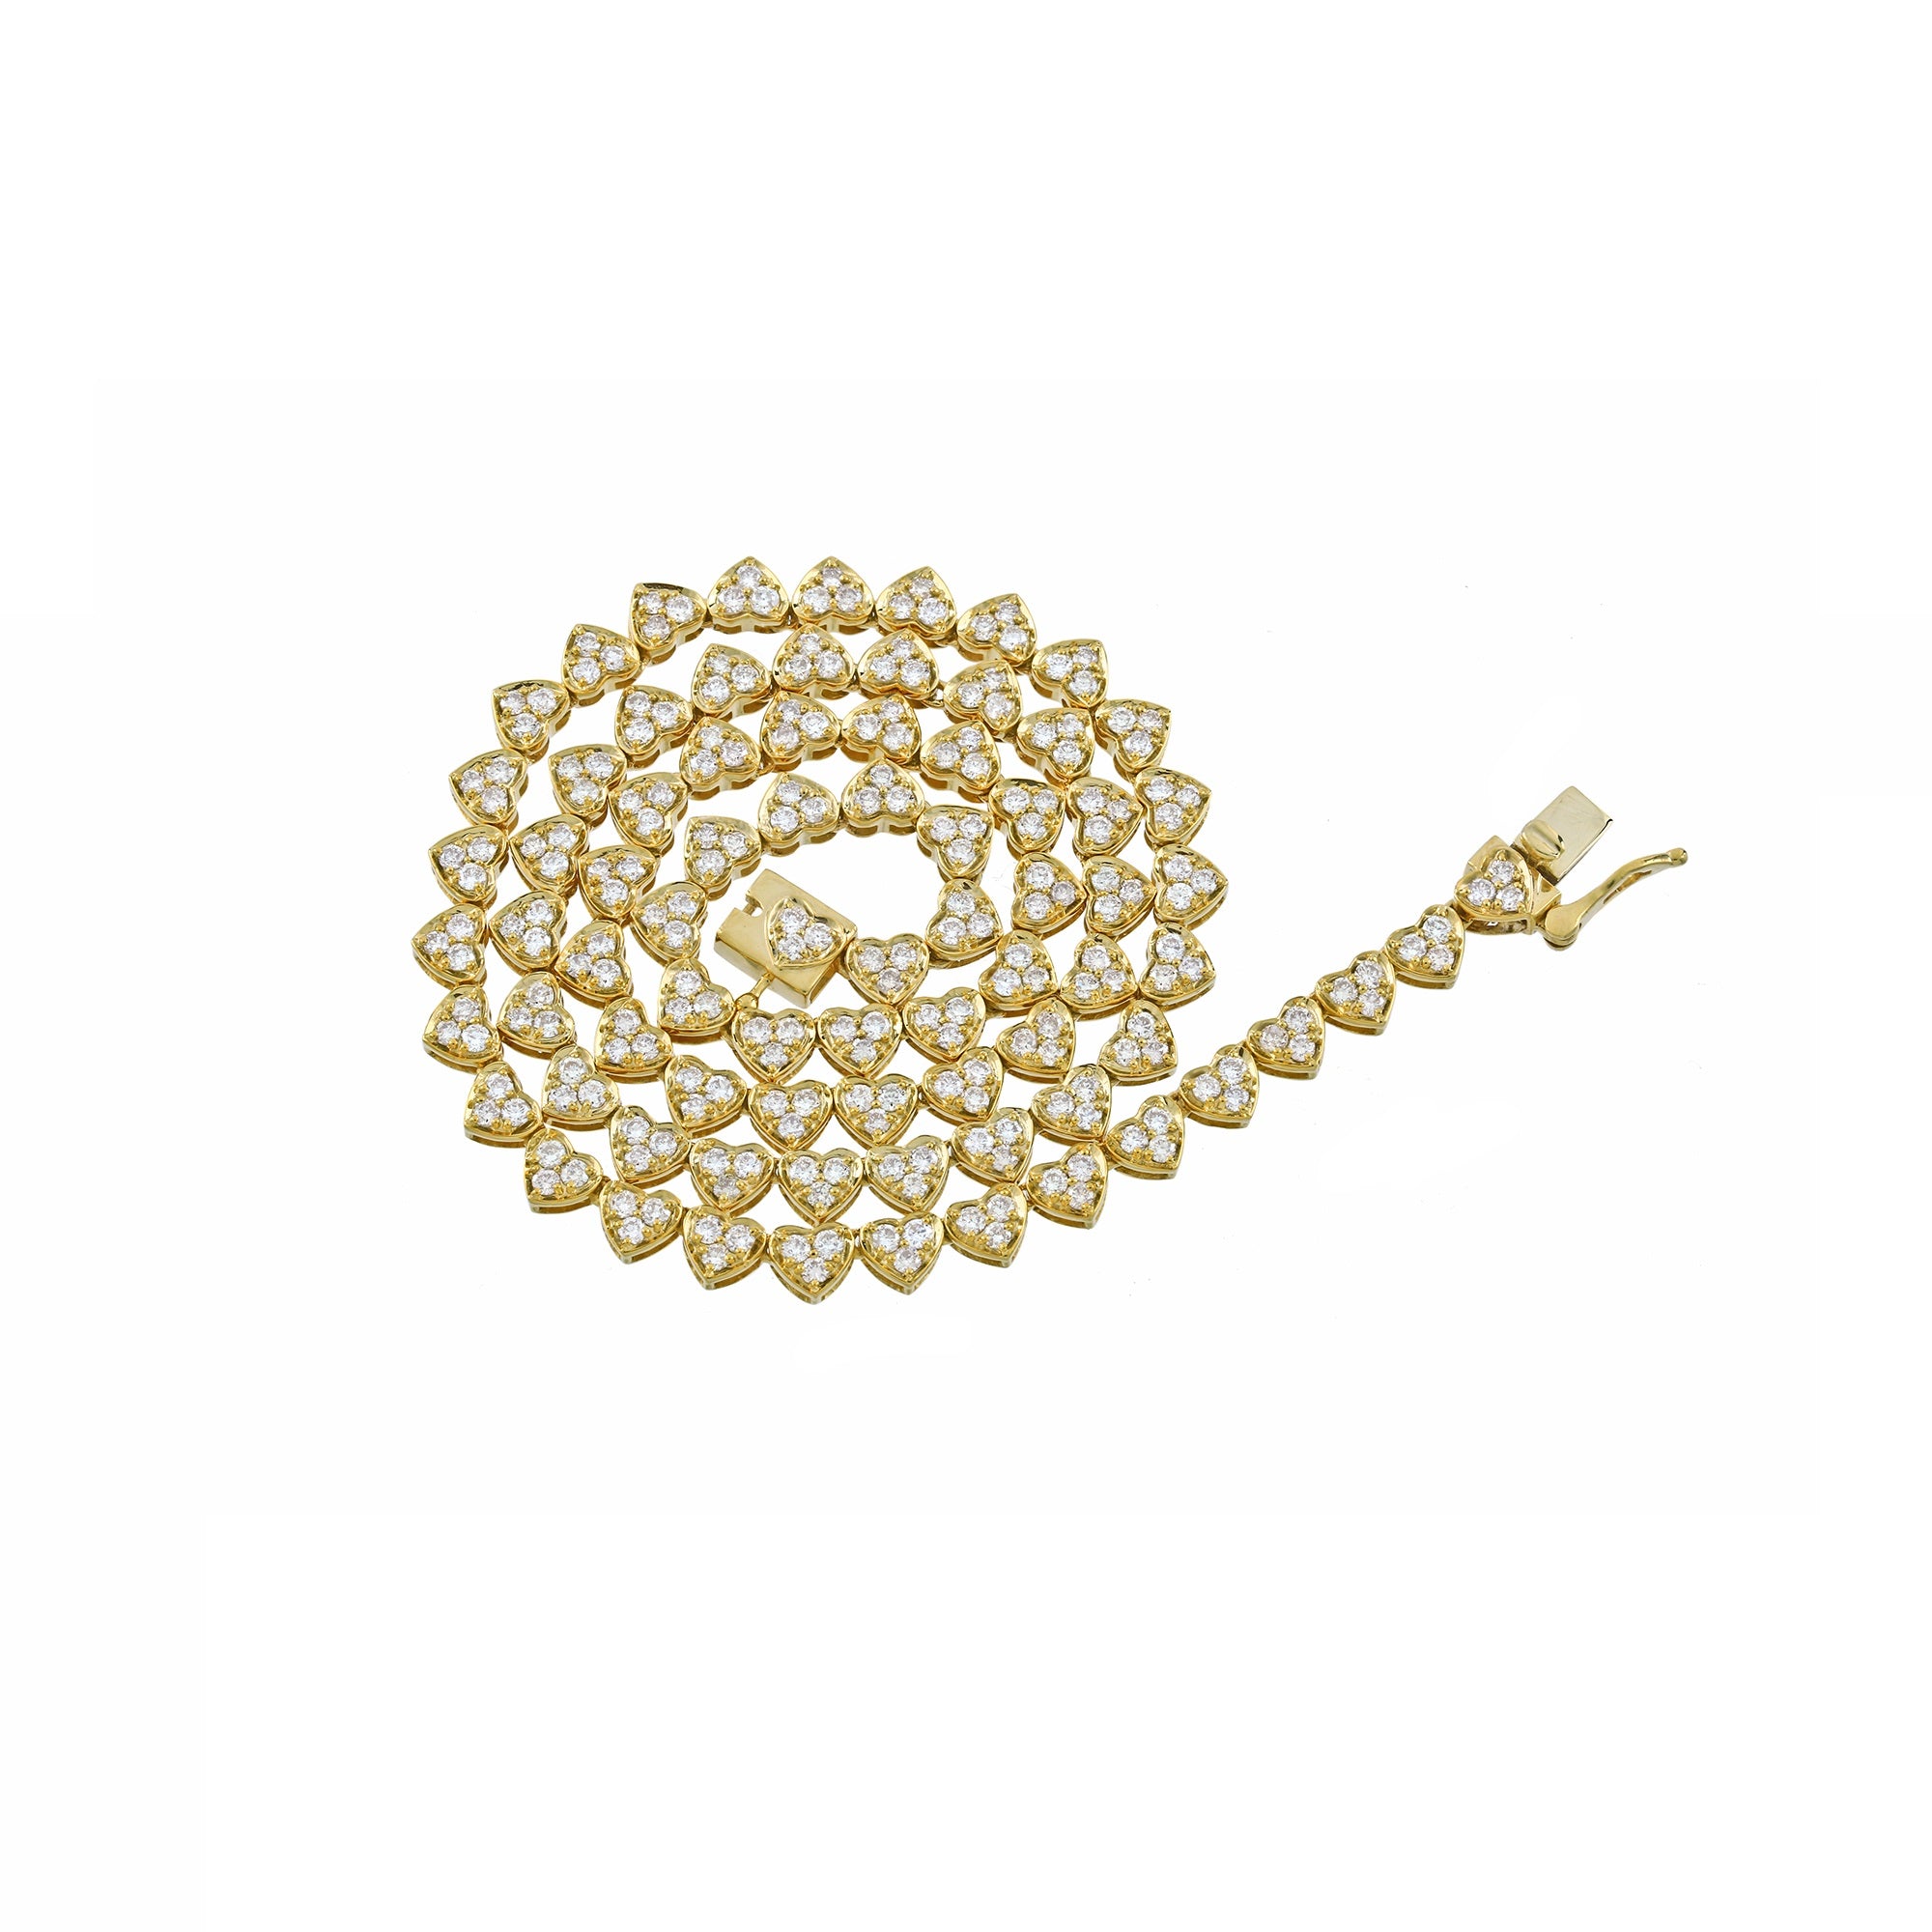 3.4mm Yellow Gold heart-shaped shiny chain by Rafaela Jewelry